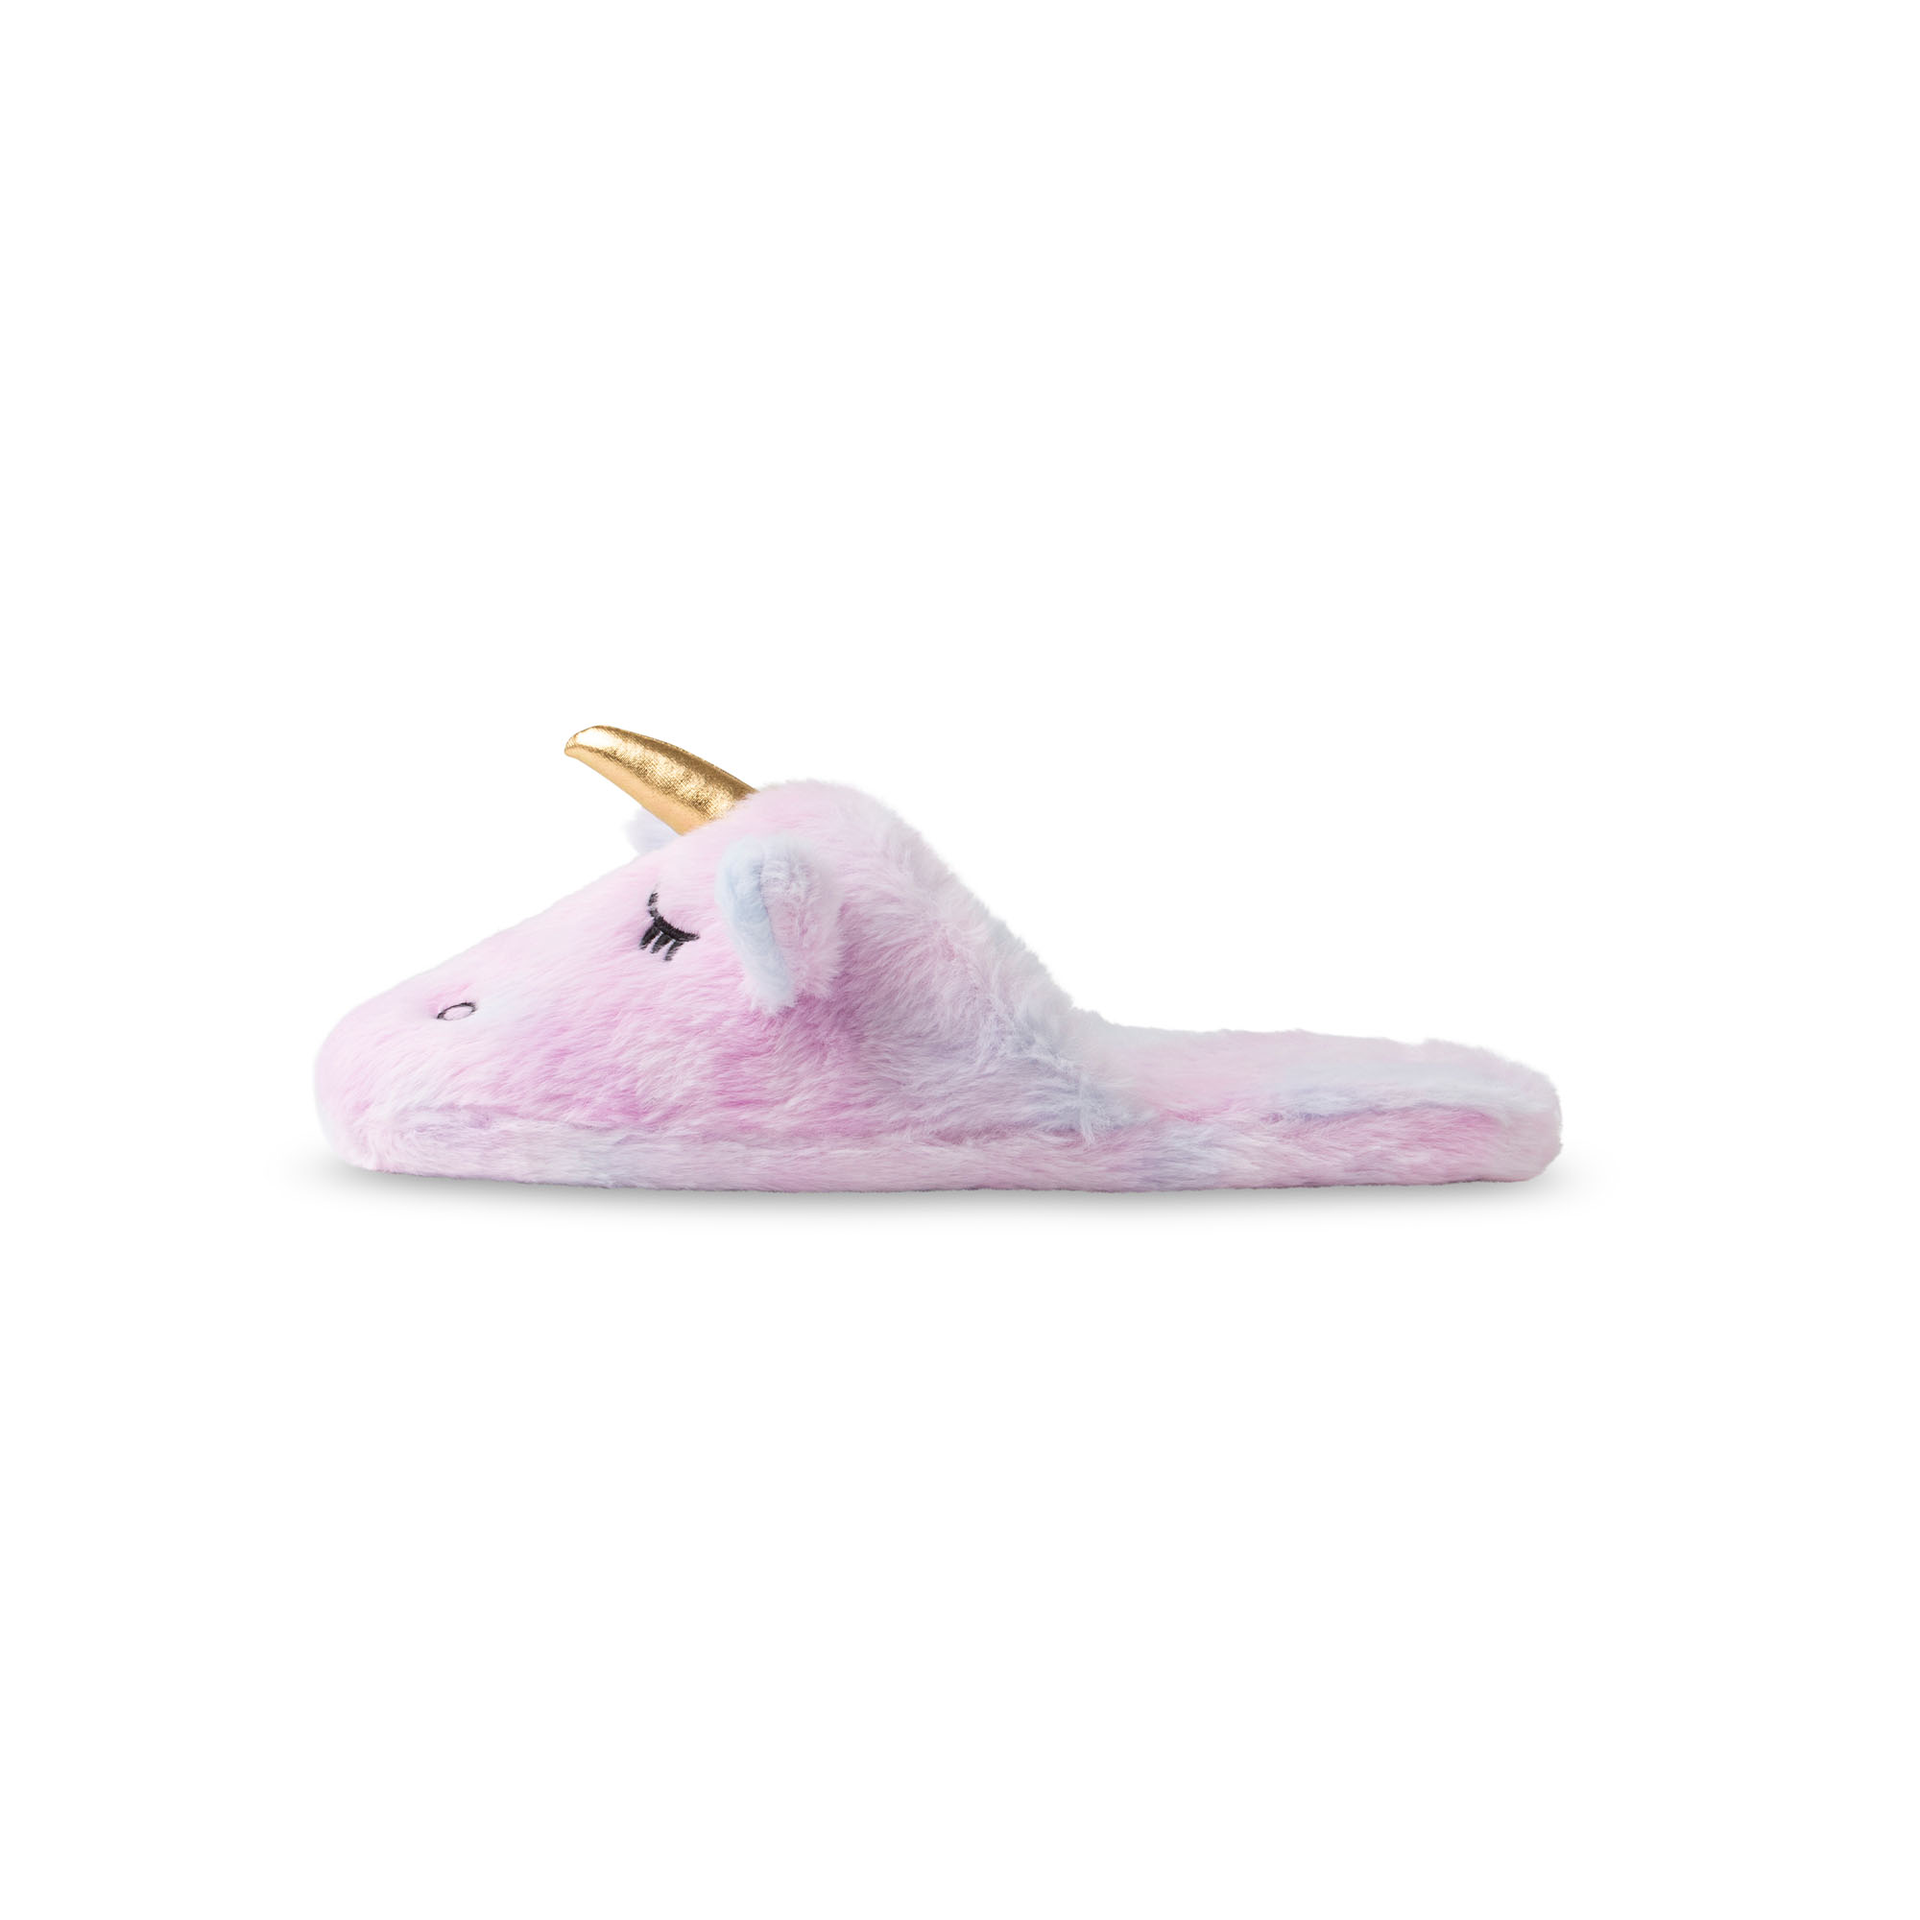 Pantofole unicorno - Taglia S-M, , large